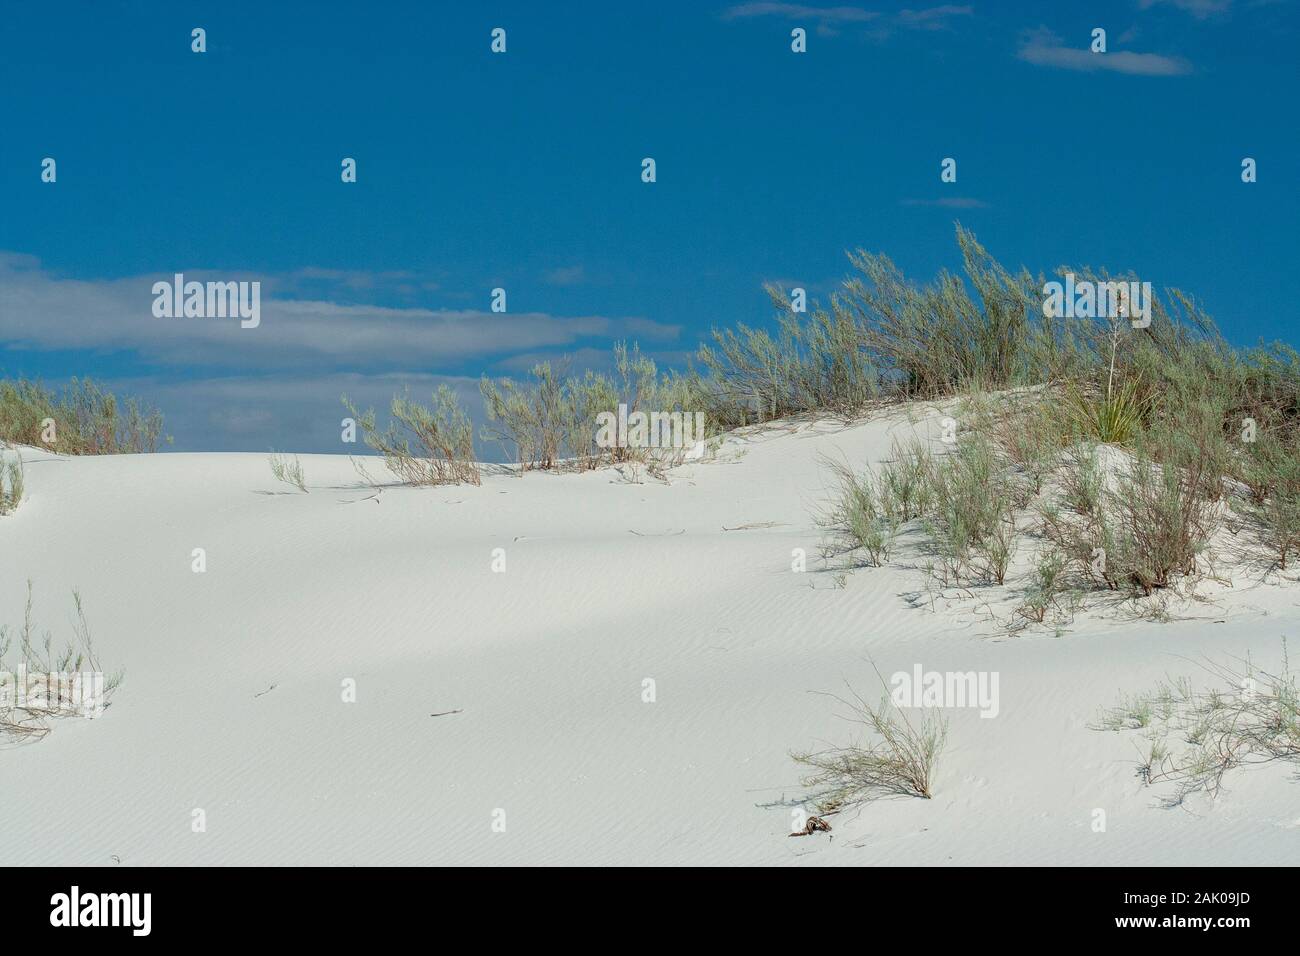 Les dunes de sable blanc étincelant au White Sands National Park dans le Nouveau-Mexique sont constituées essentiellement de la minéral gypse. Banque D'Images